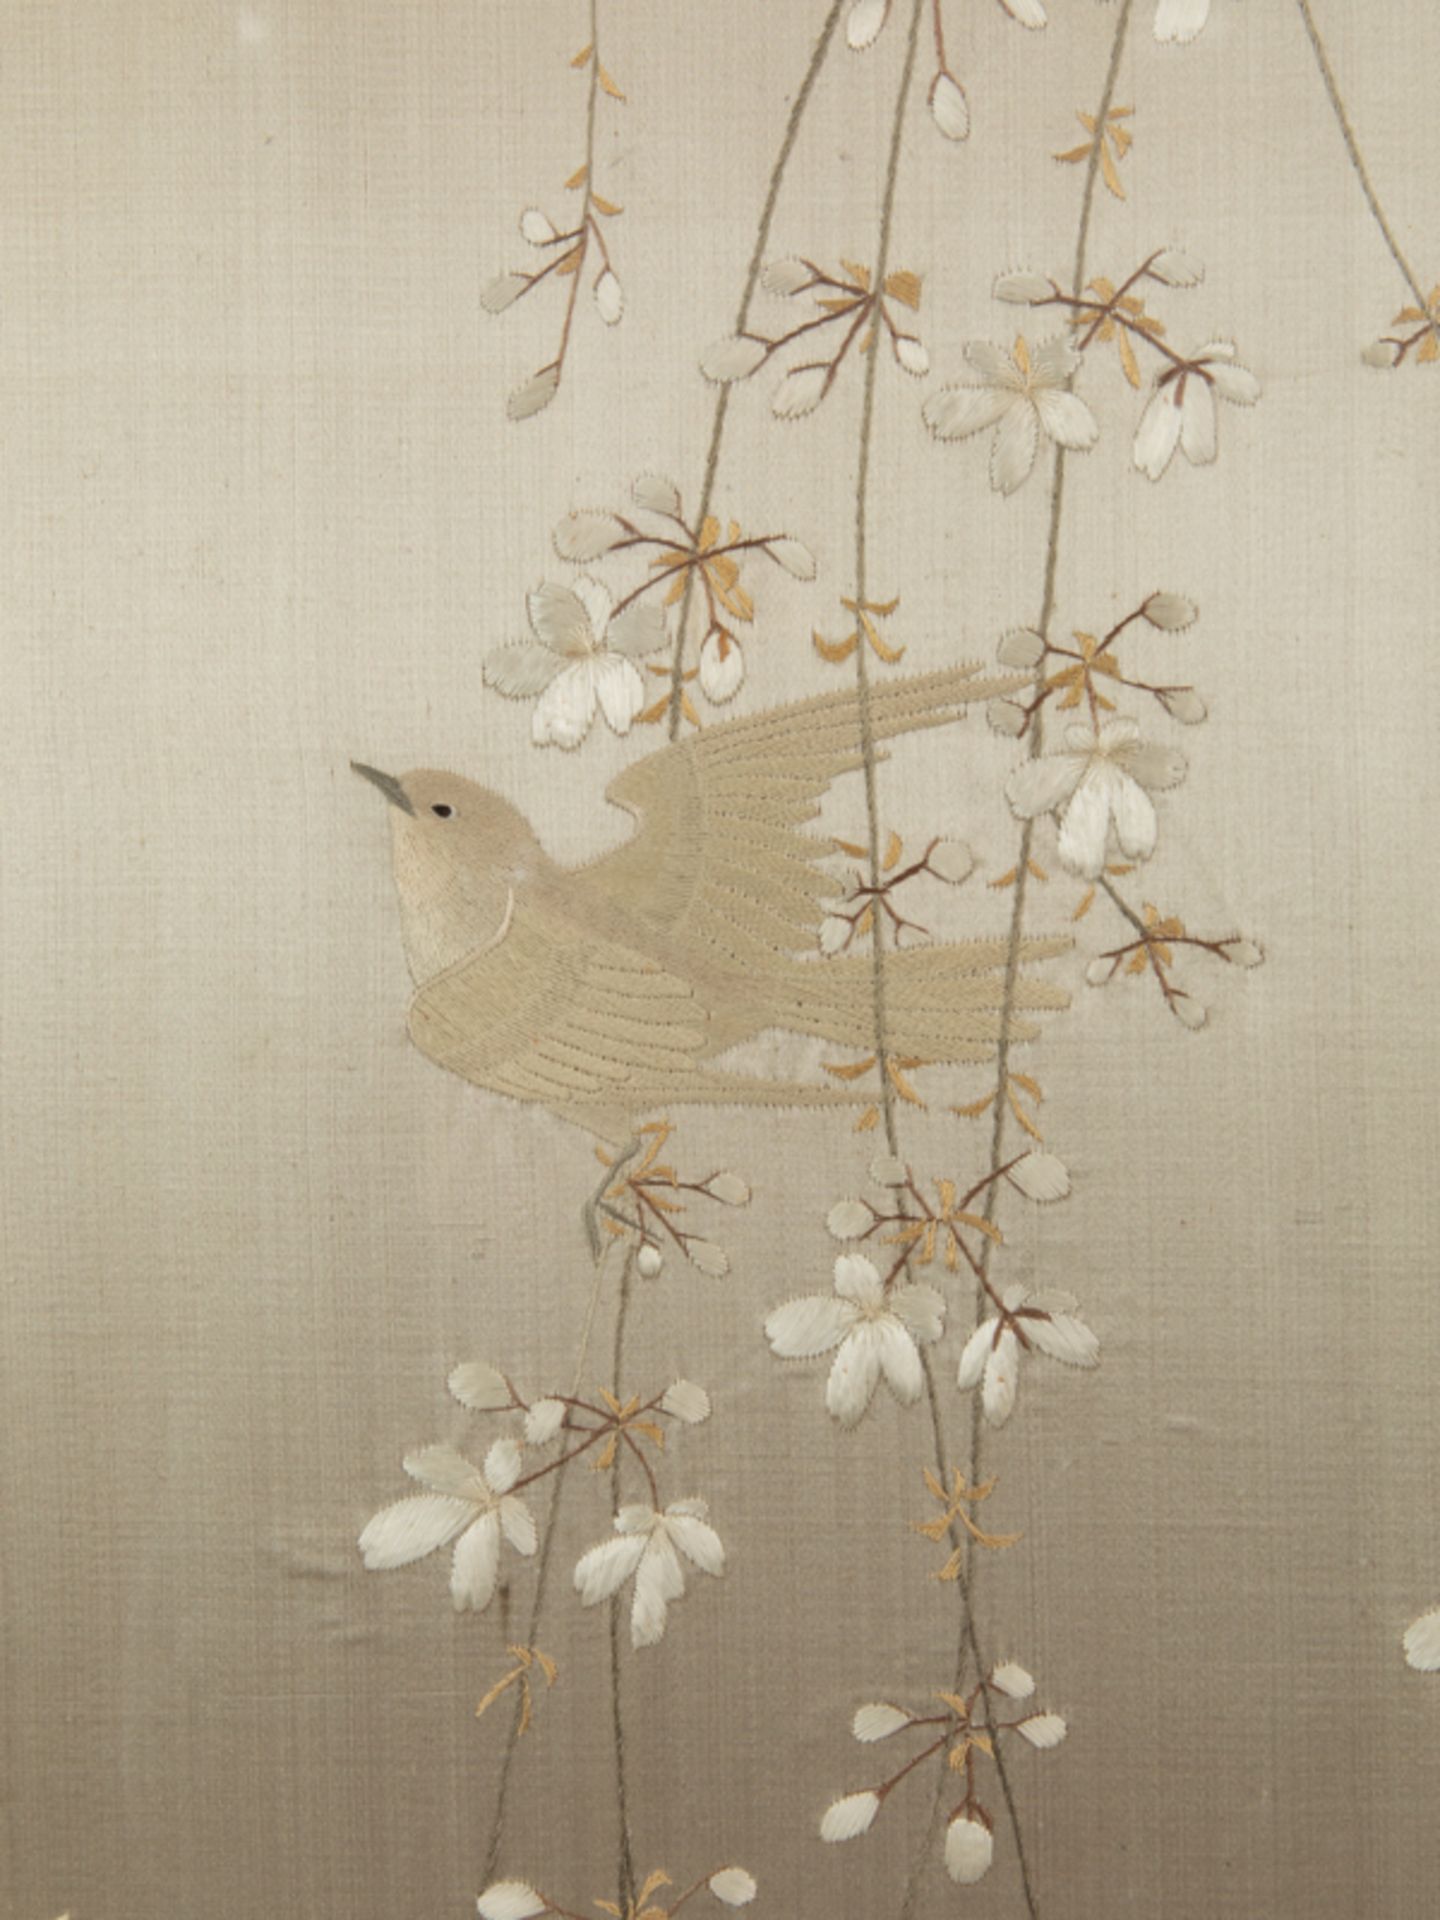 Singvögel in Blütenzweigen, Seidenbild, Japan, Meiji Zeit. - Image 4 of 10